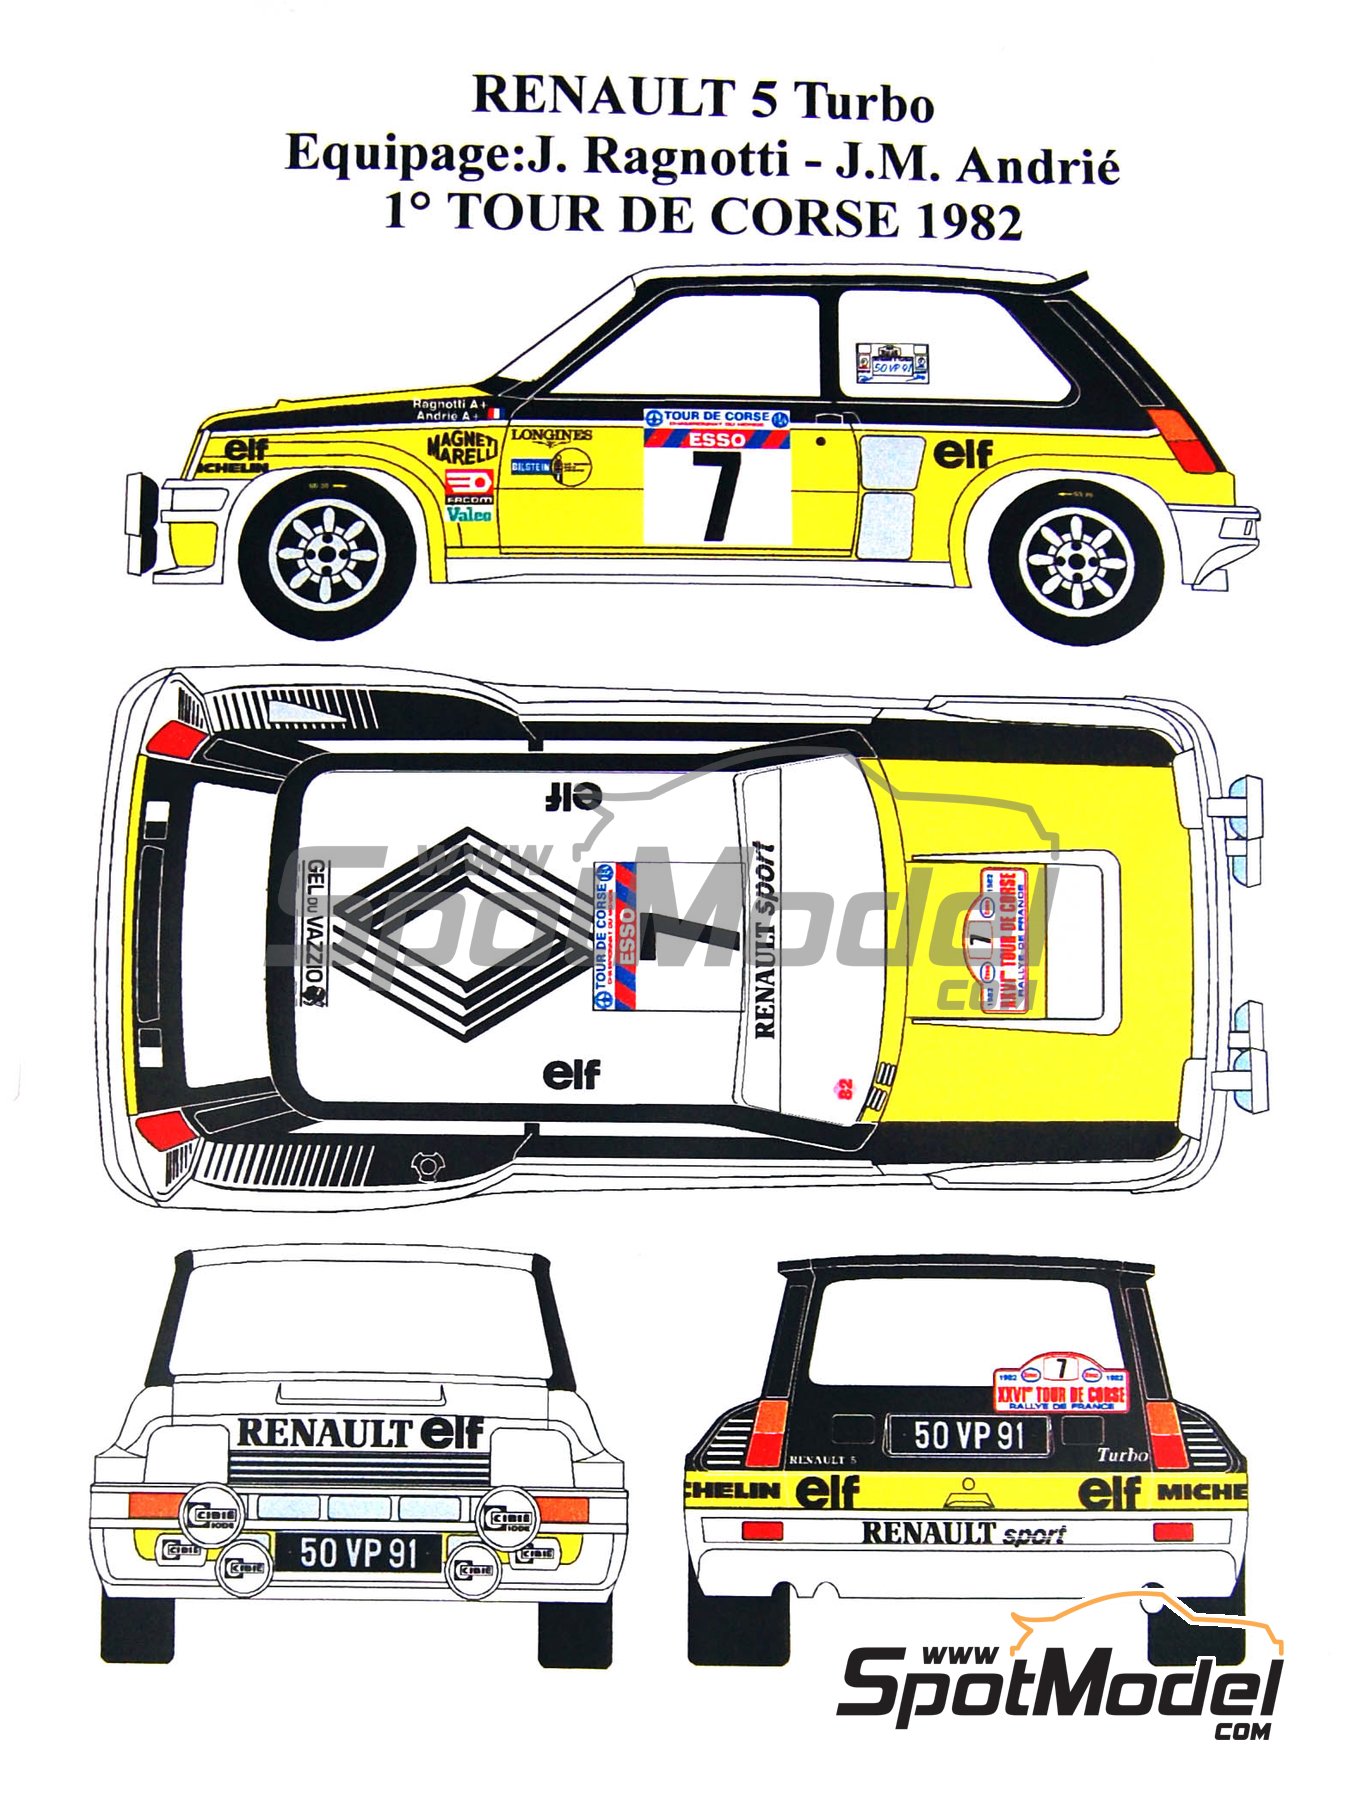 FFSMC Productions Decals 1/43 Renault 5 Turbo Tour de Corse 1982 